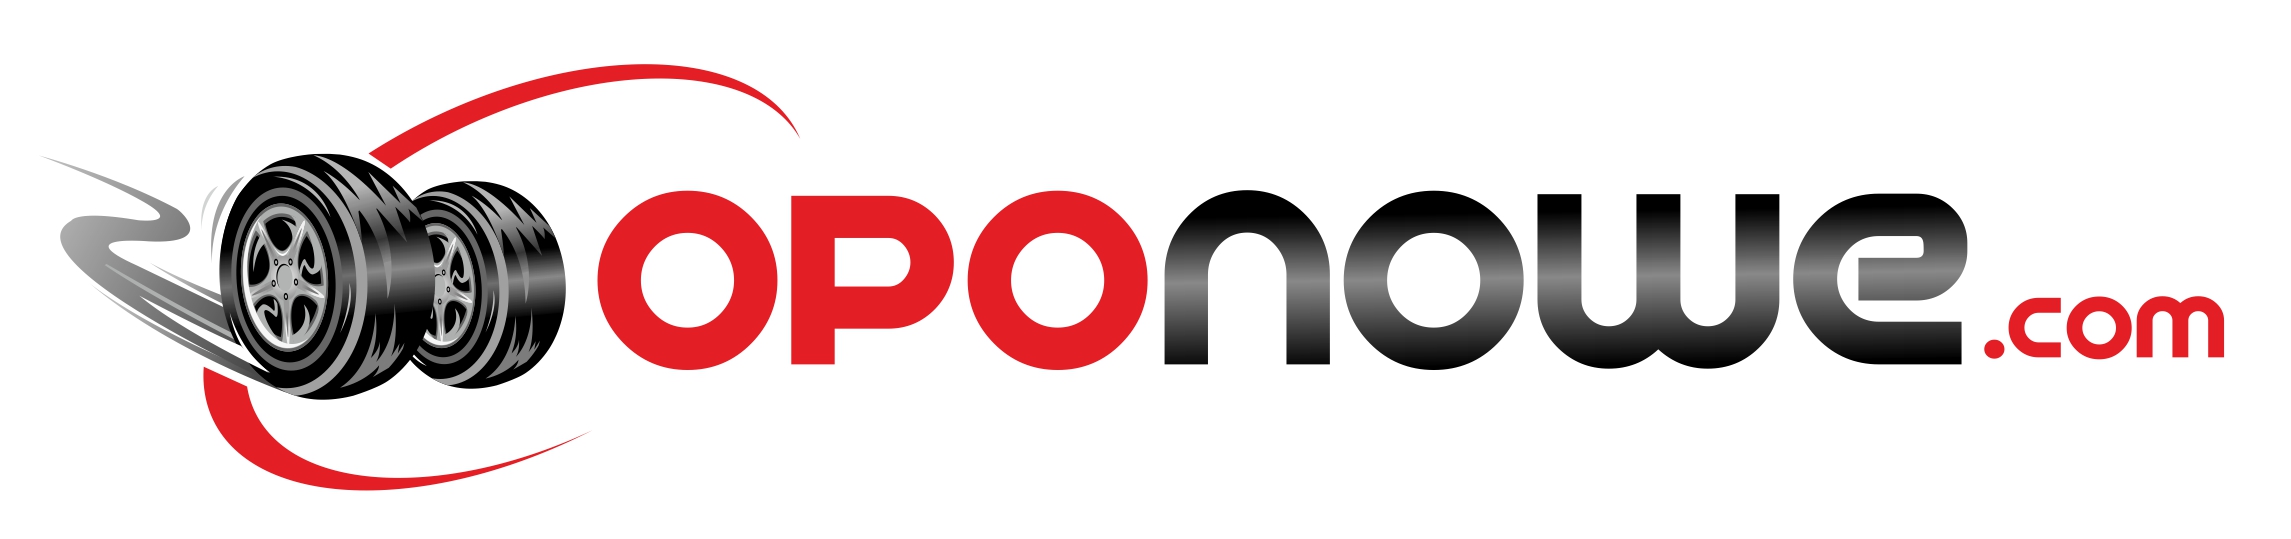 Opony - sklep oponowe.com